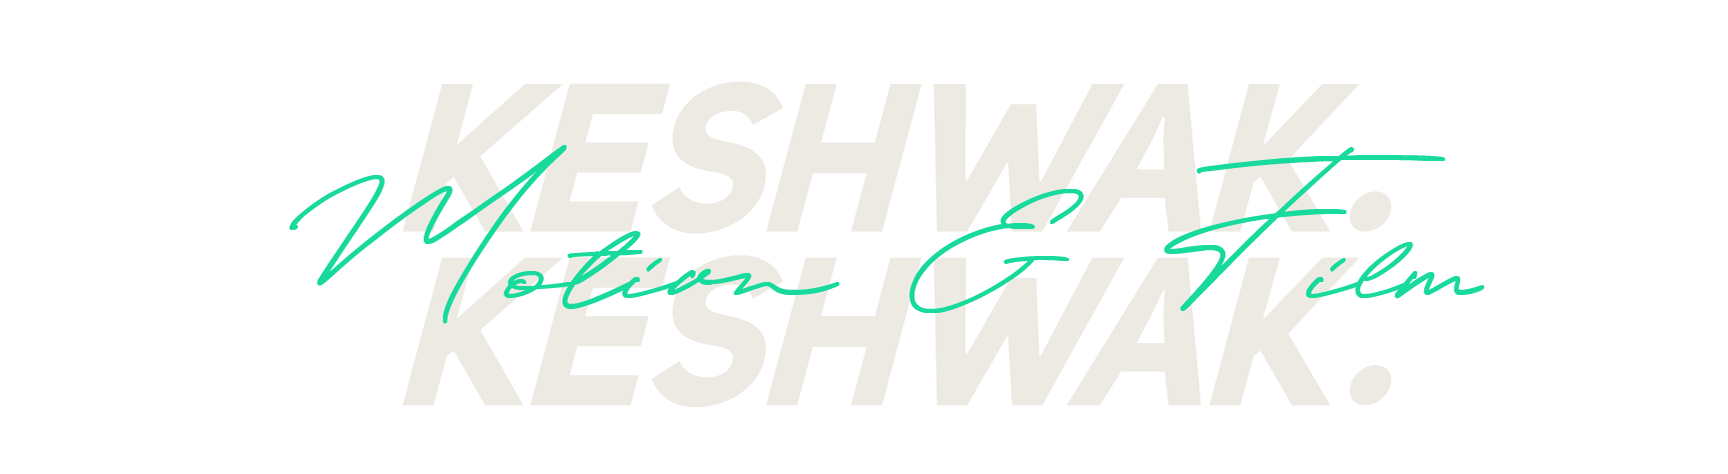 Keshwak